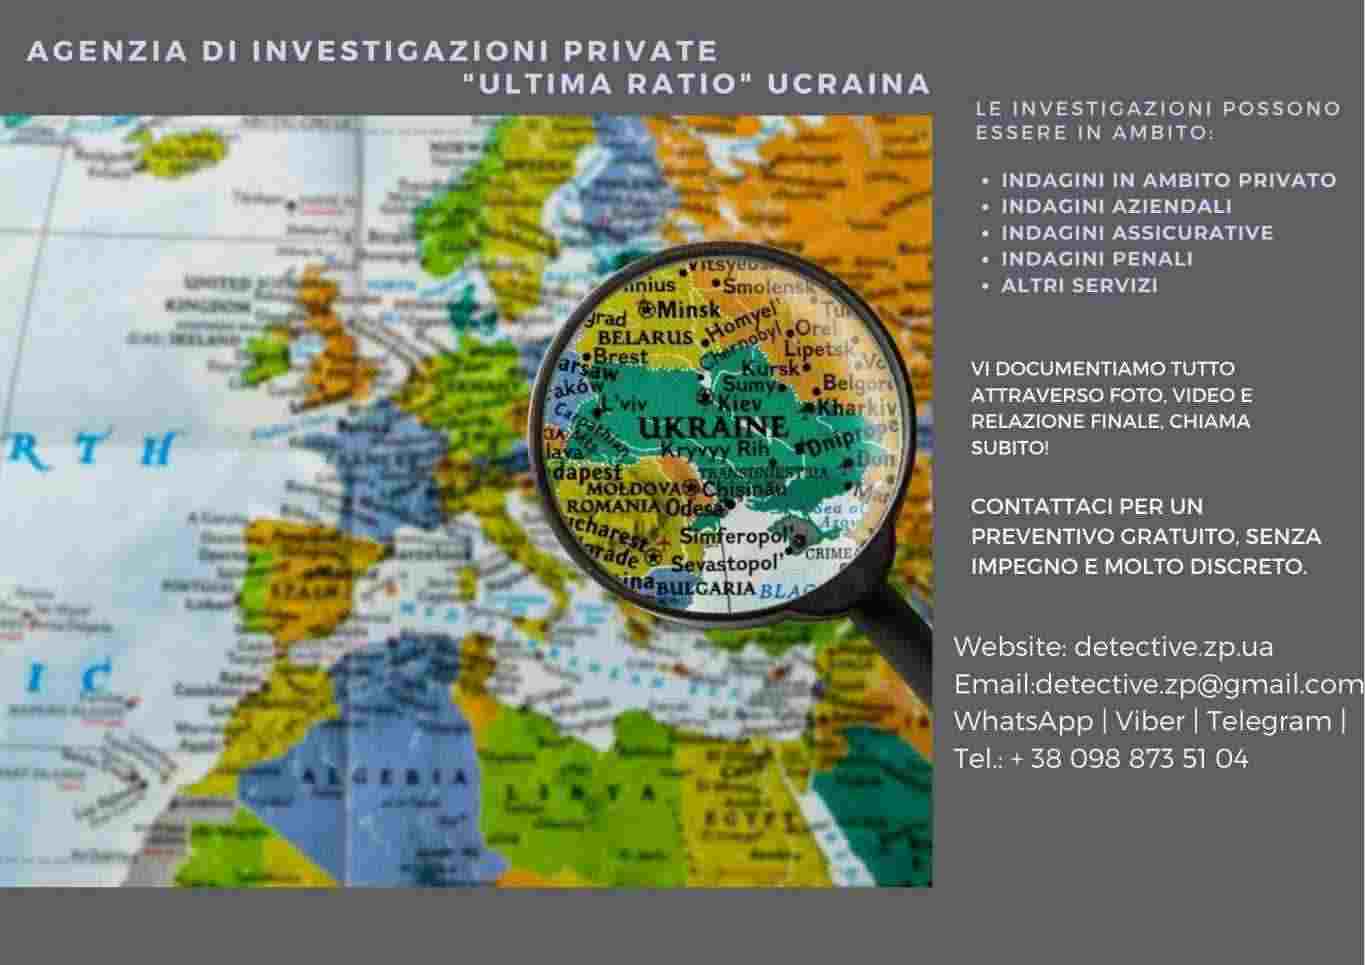 Invistigatore private Ucraina, Agenzia di investigazione private Ucraina, Indagini Ucraina